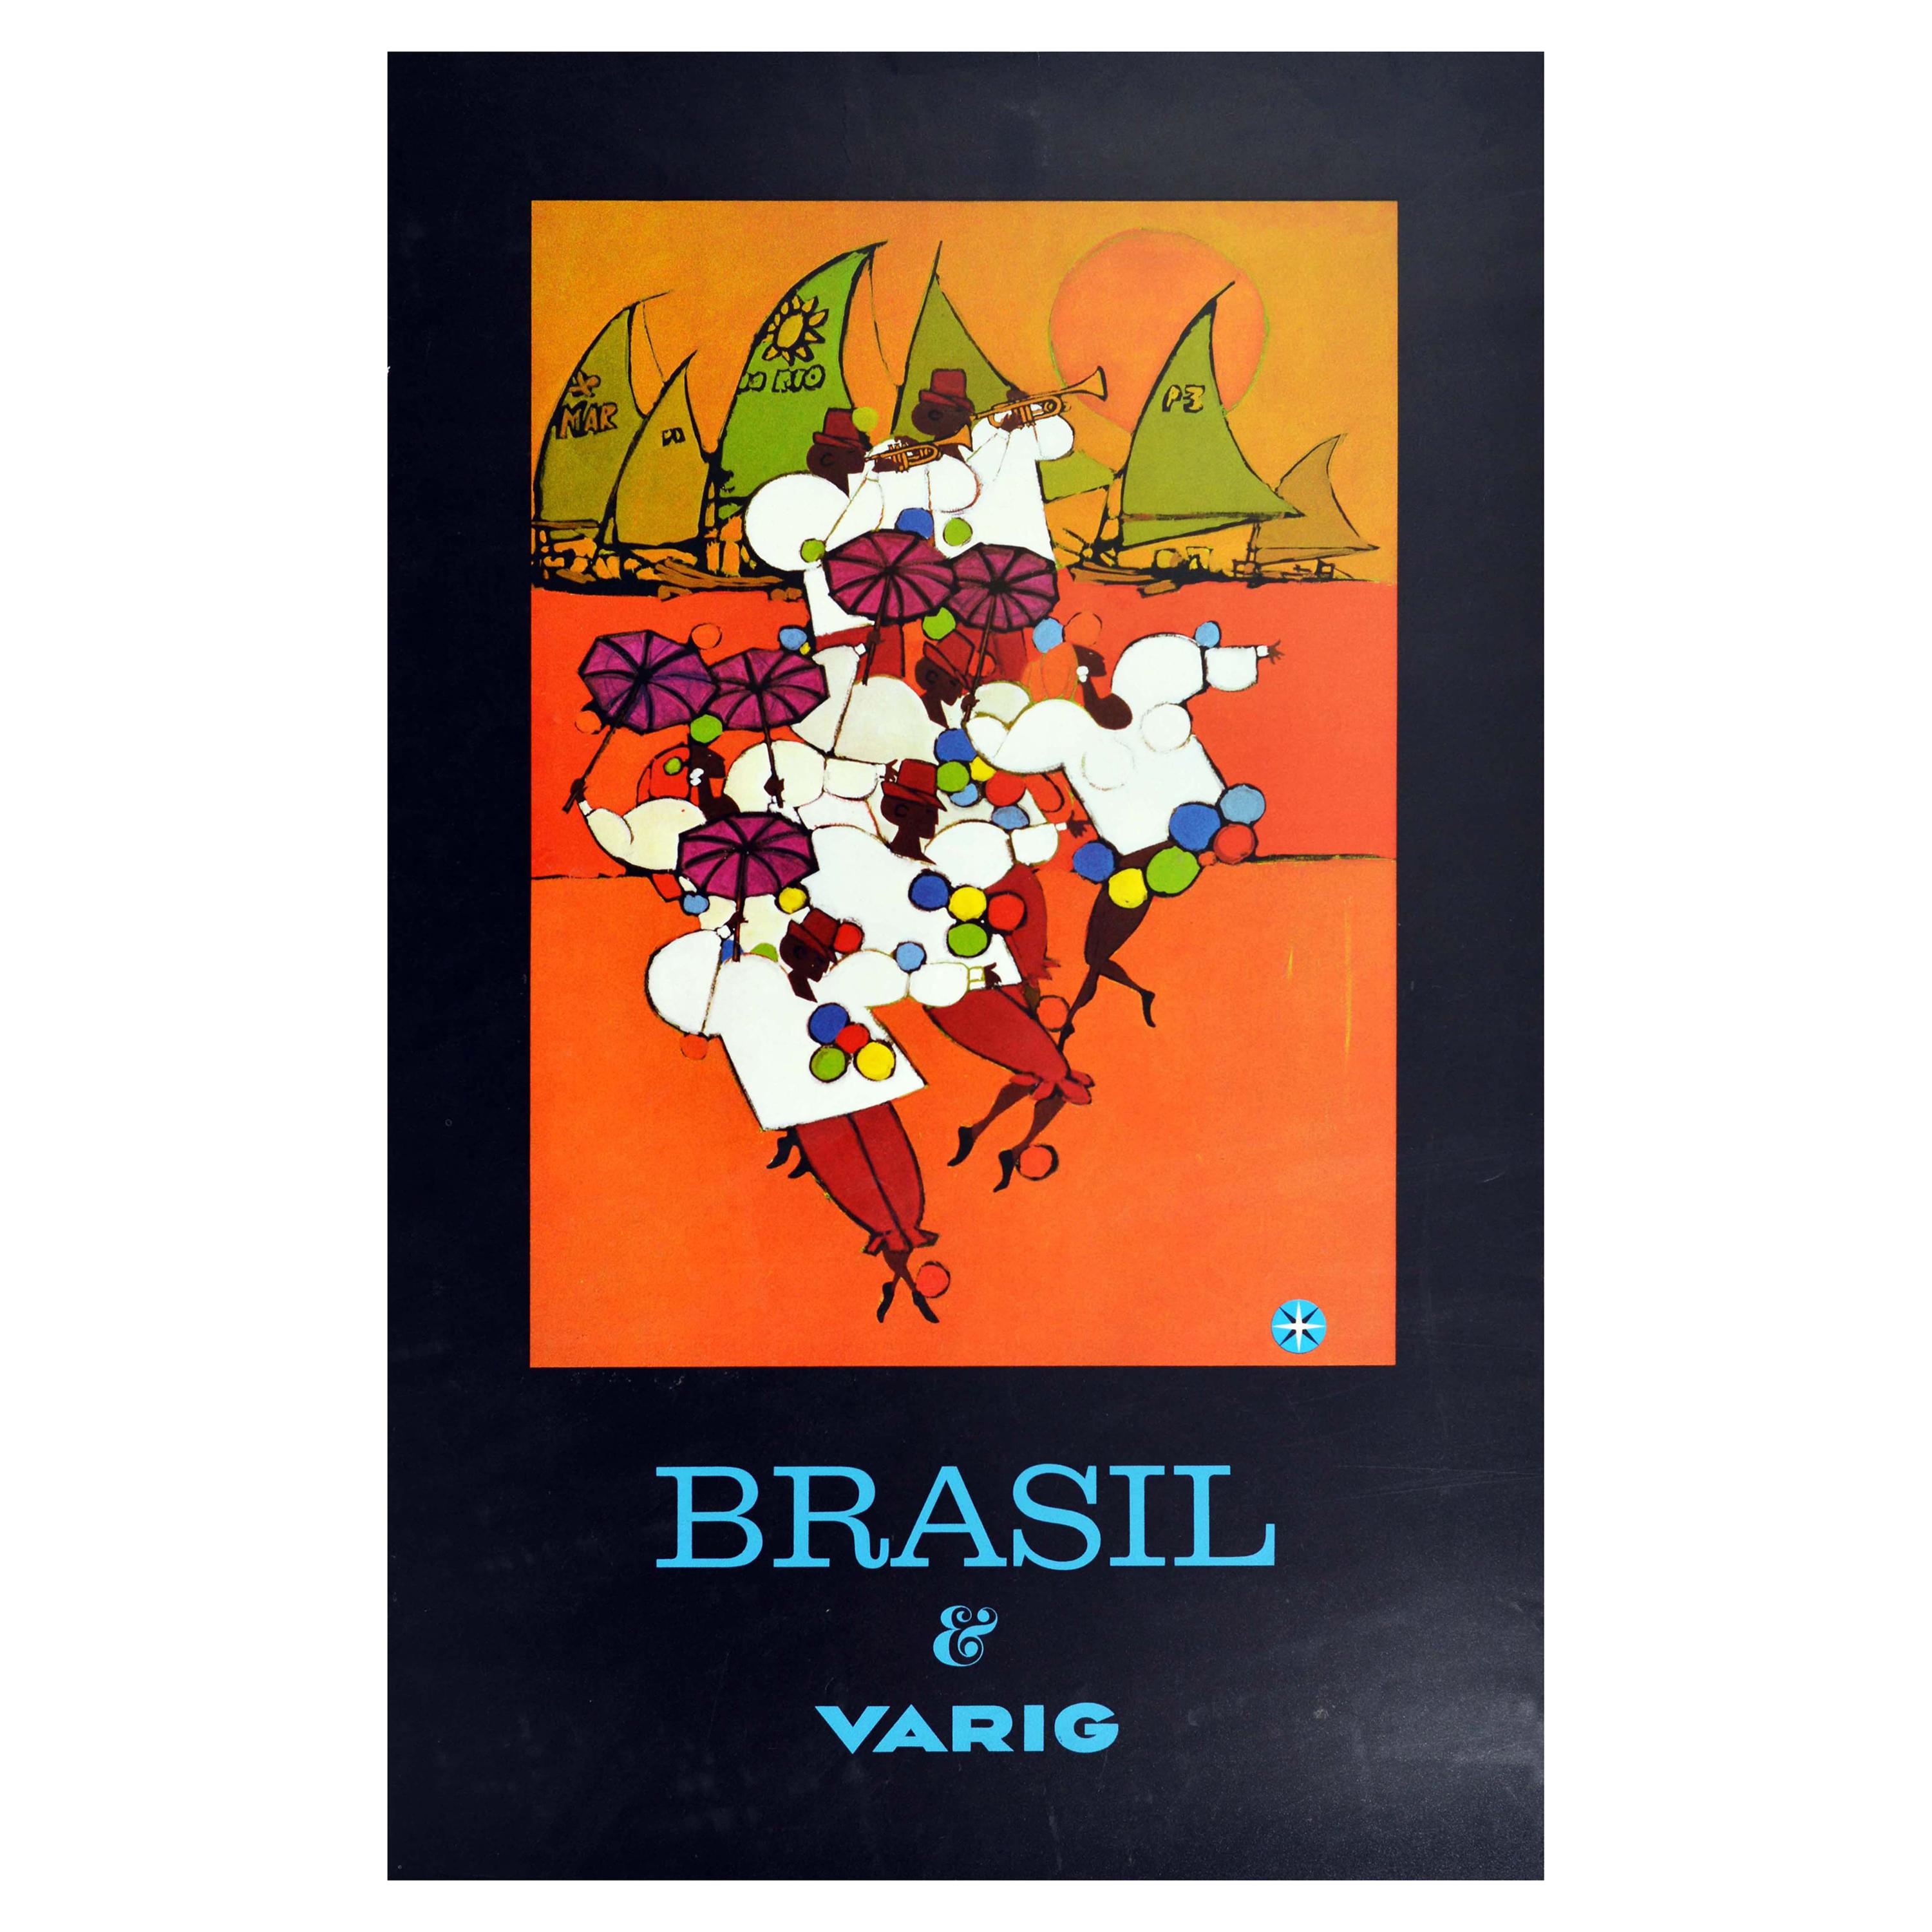 Original Vintage Travel Poster Brazil Brasil Varig Rio Carnival Frevo Capoeira